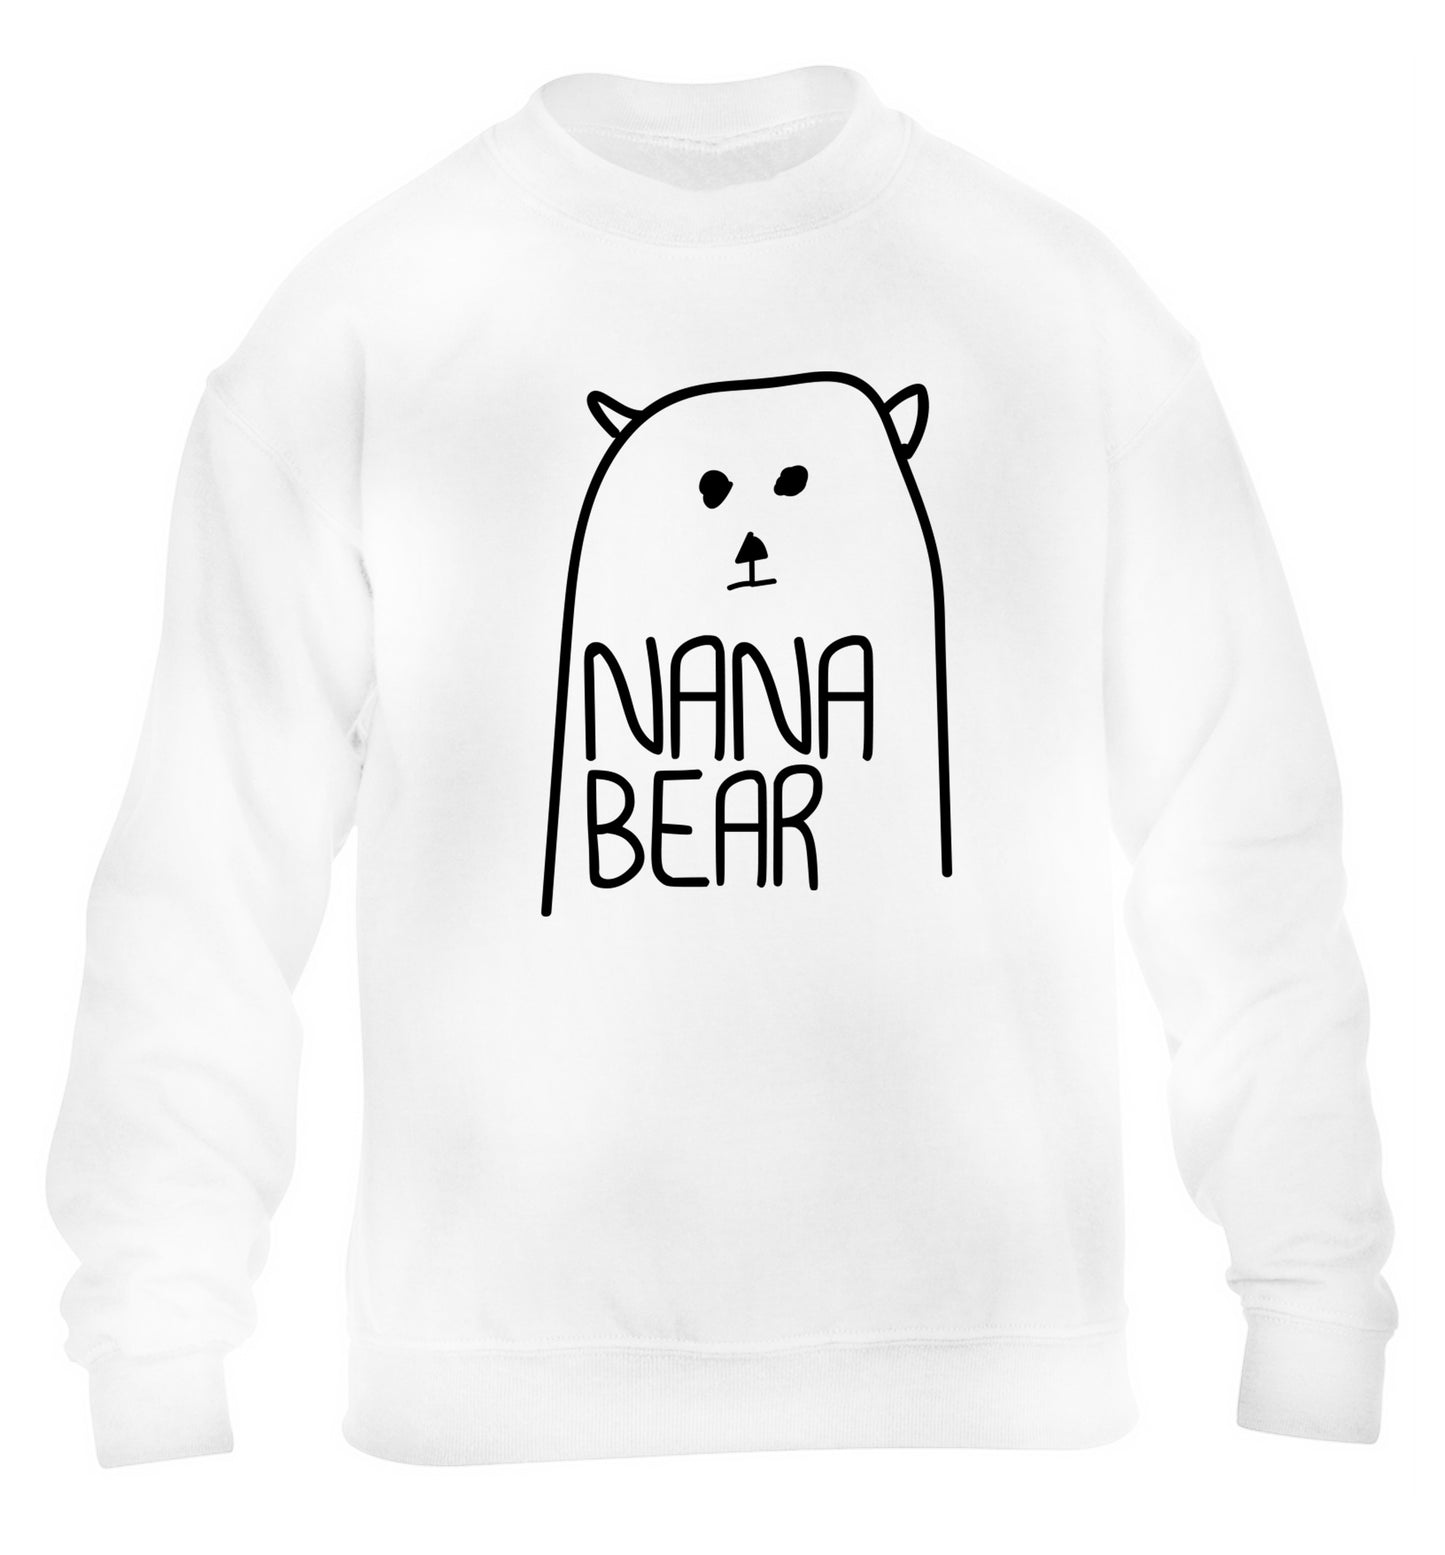 Nana bear children's white sweater 12-13 Years